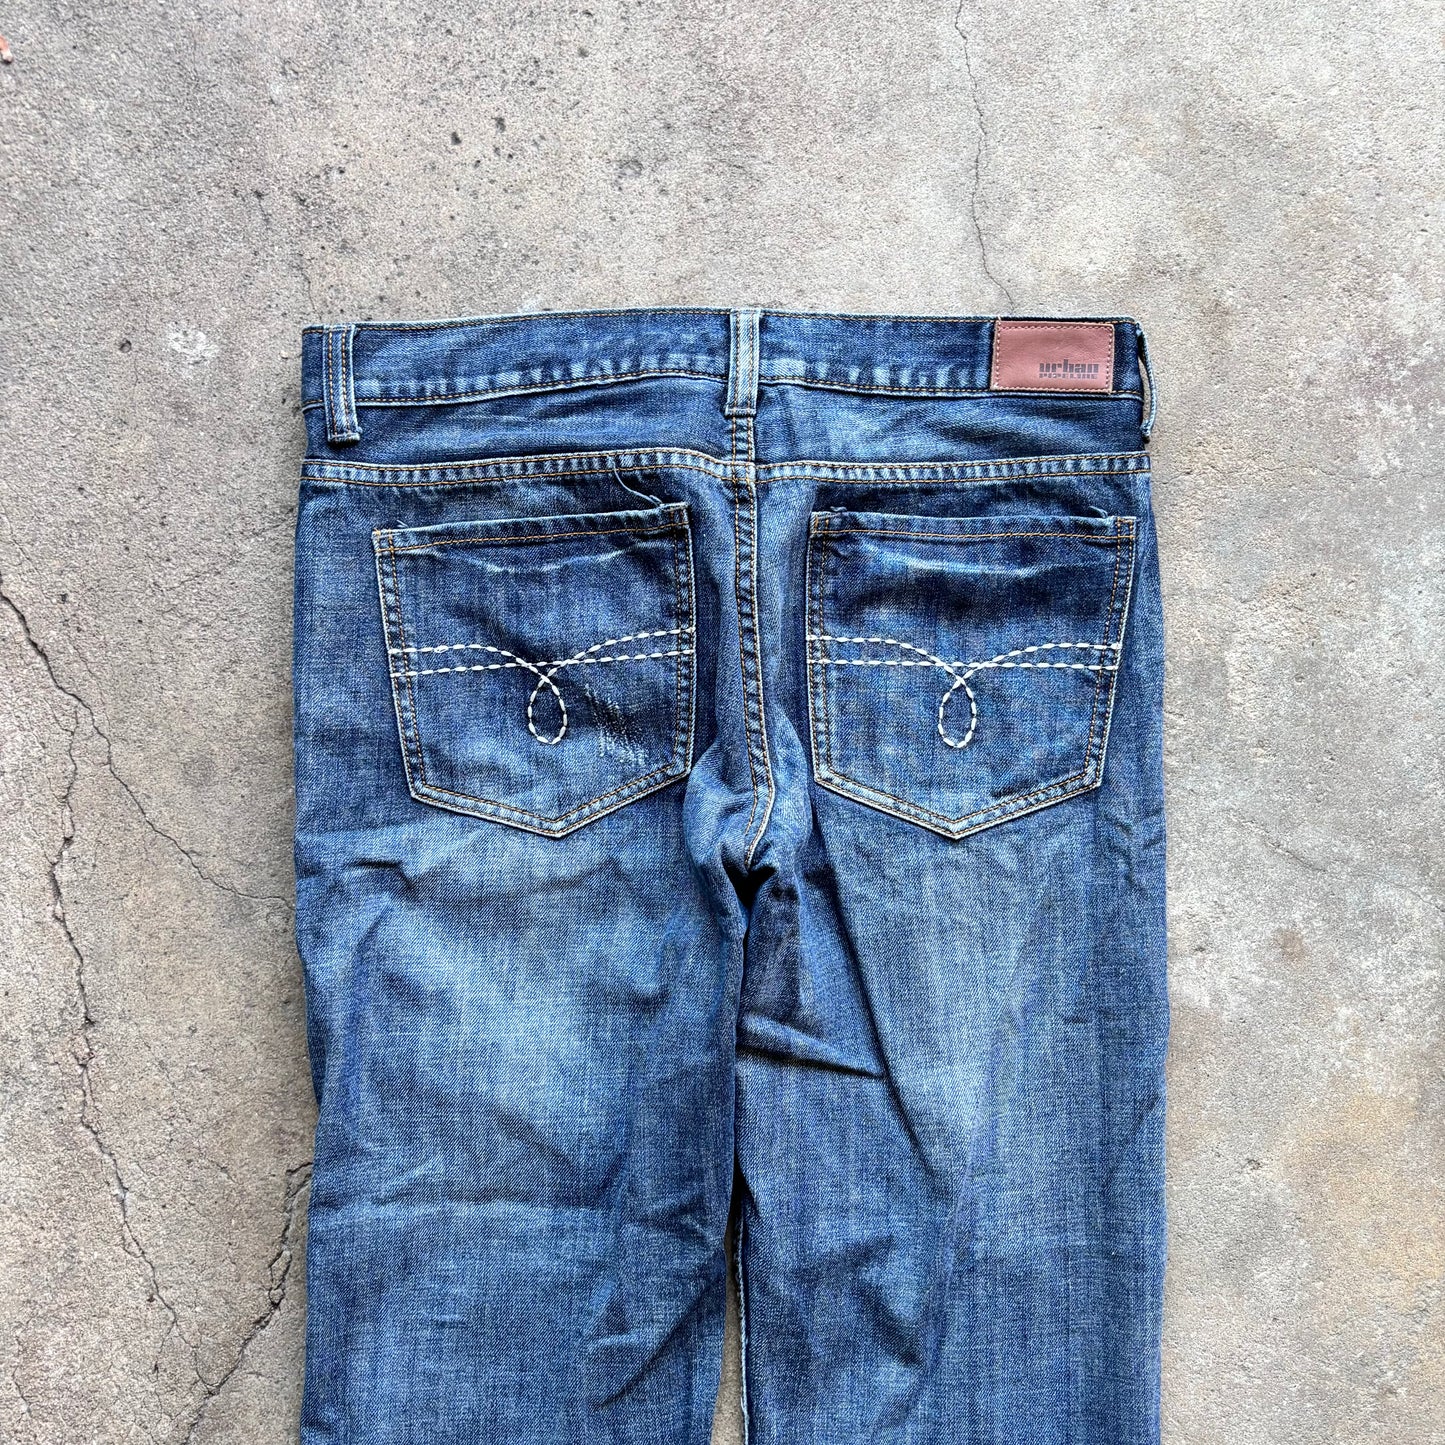 Urban Pipeline Dark Wash Jeans [32 x 30]